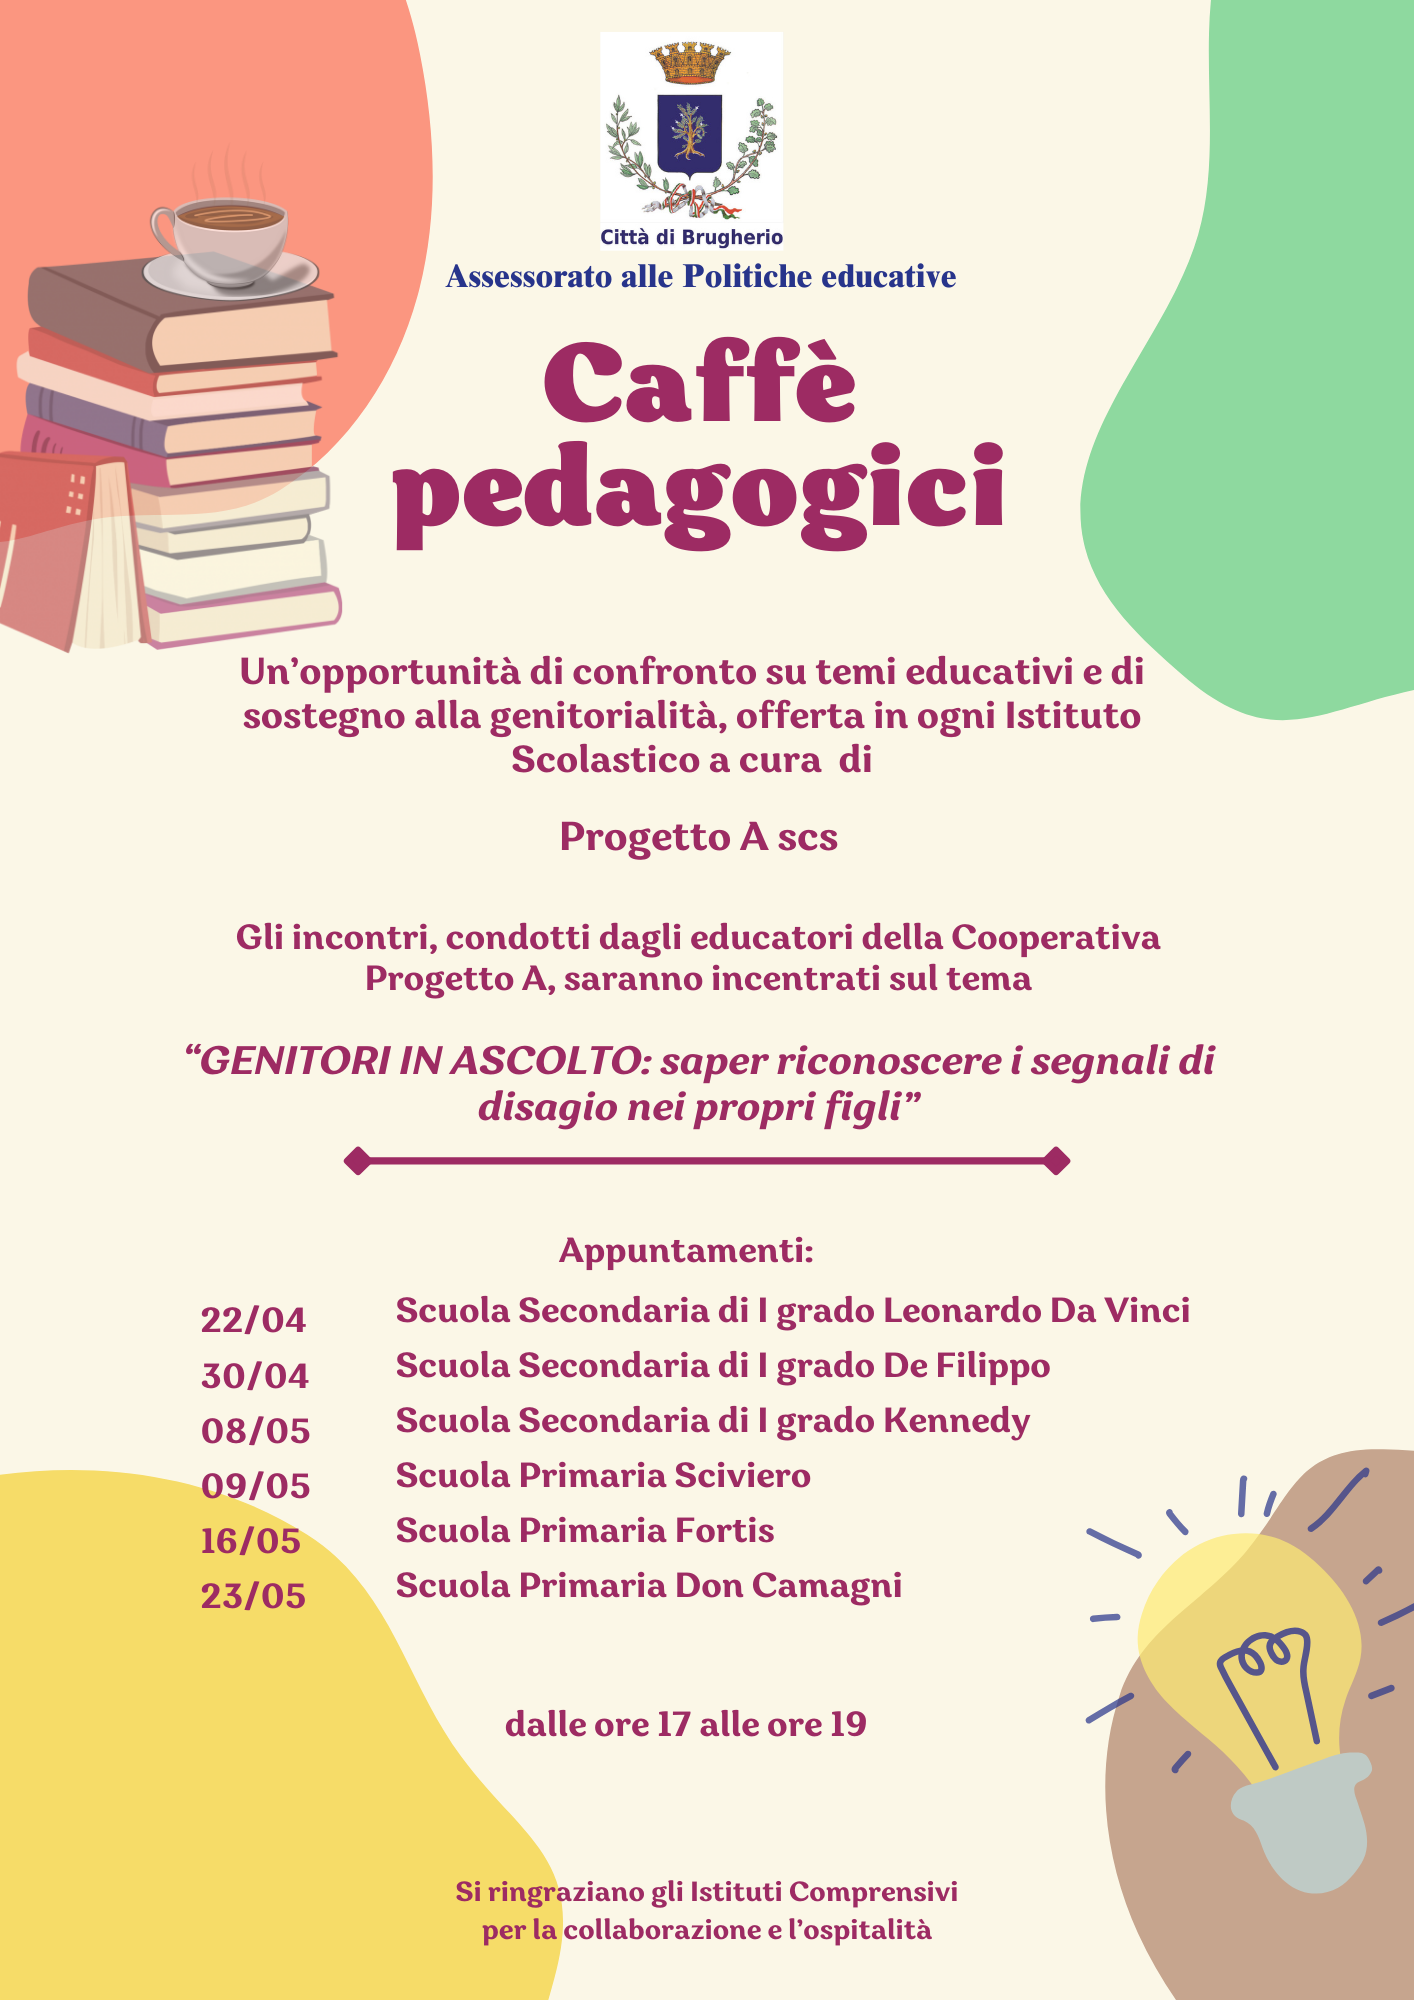 Caffè pedagogici